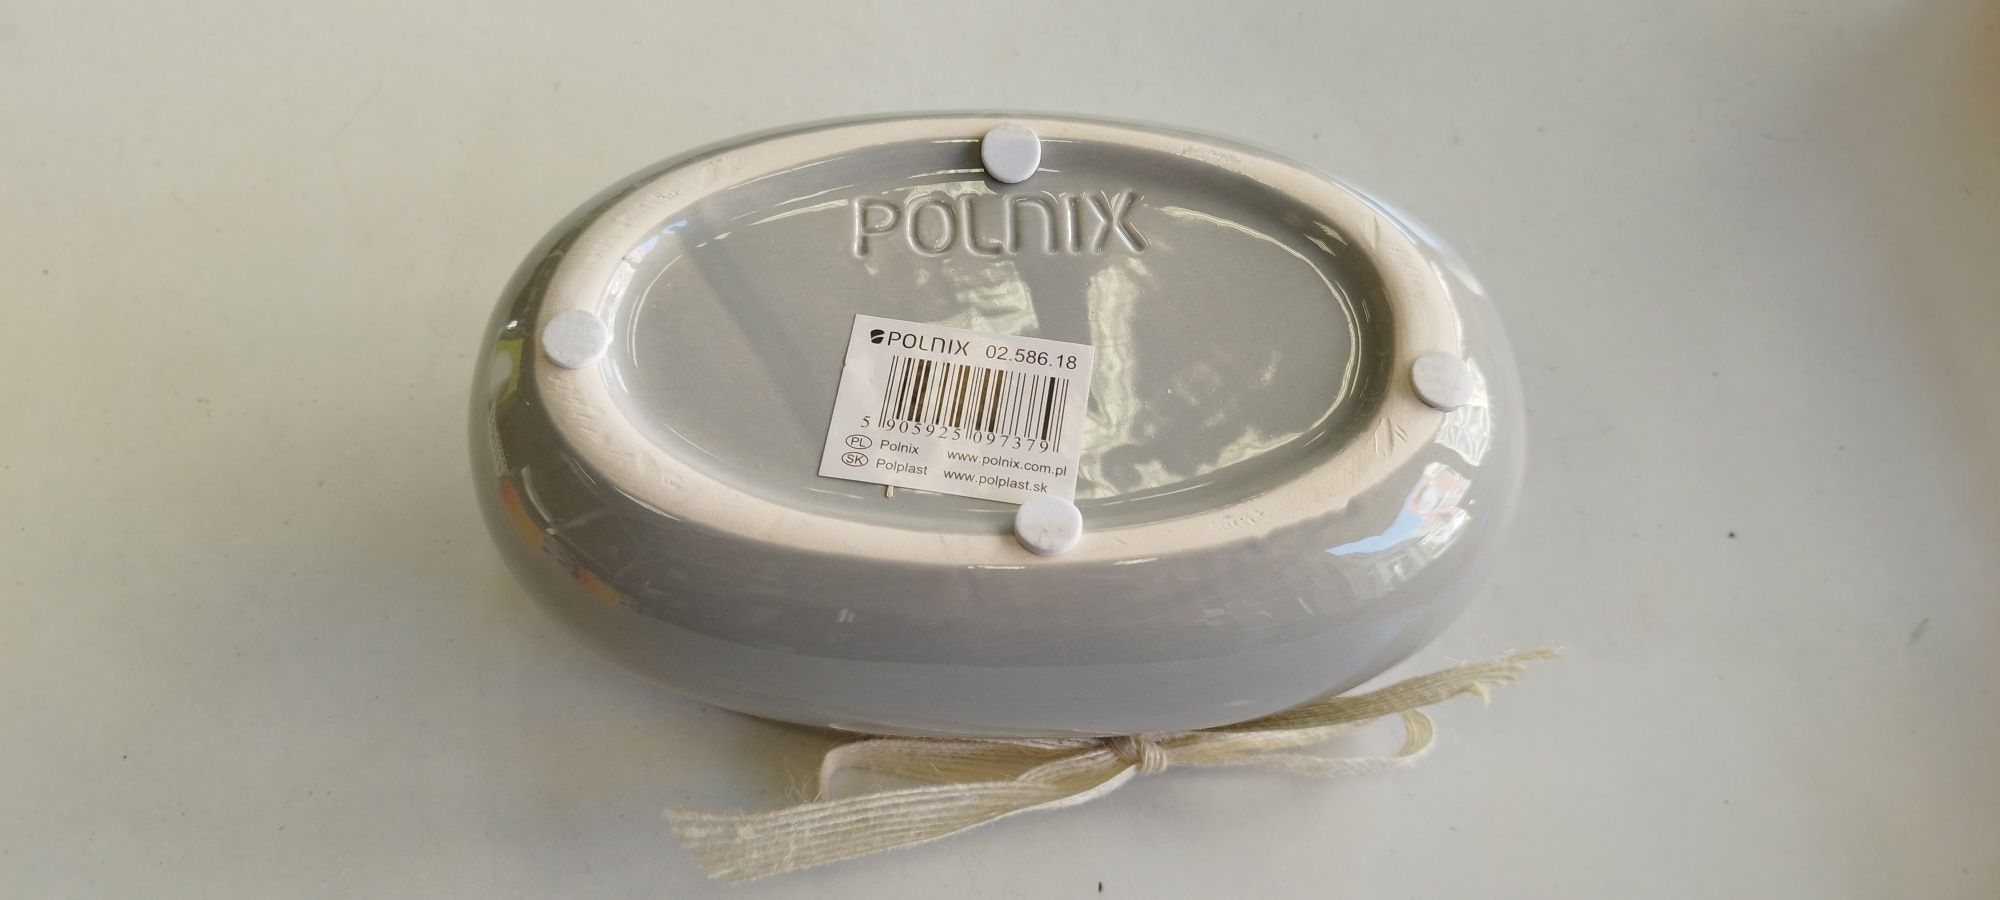 POLNIX. osłonka owalna (korytko) Ceramika